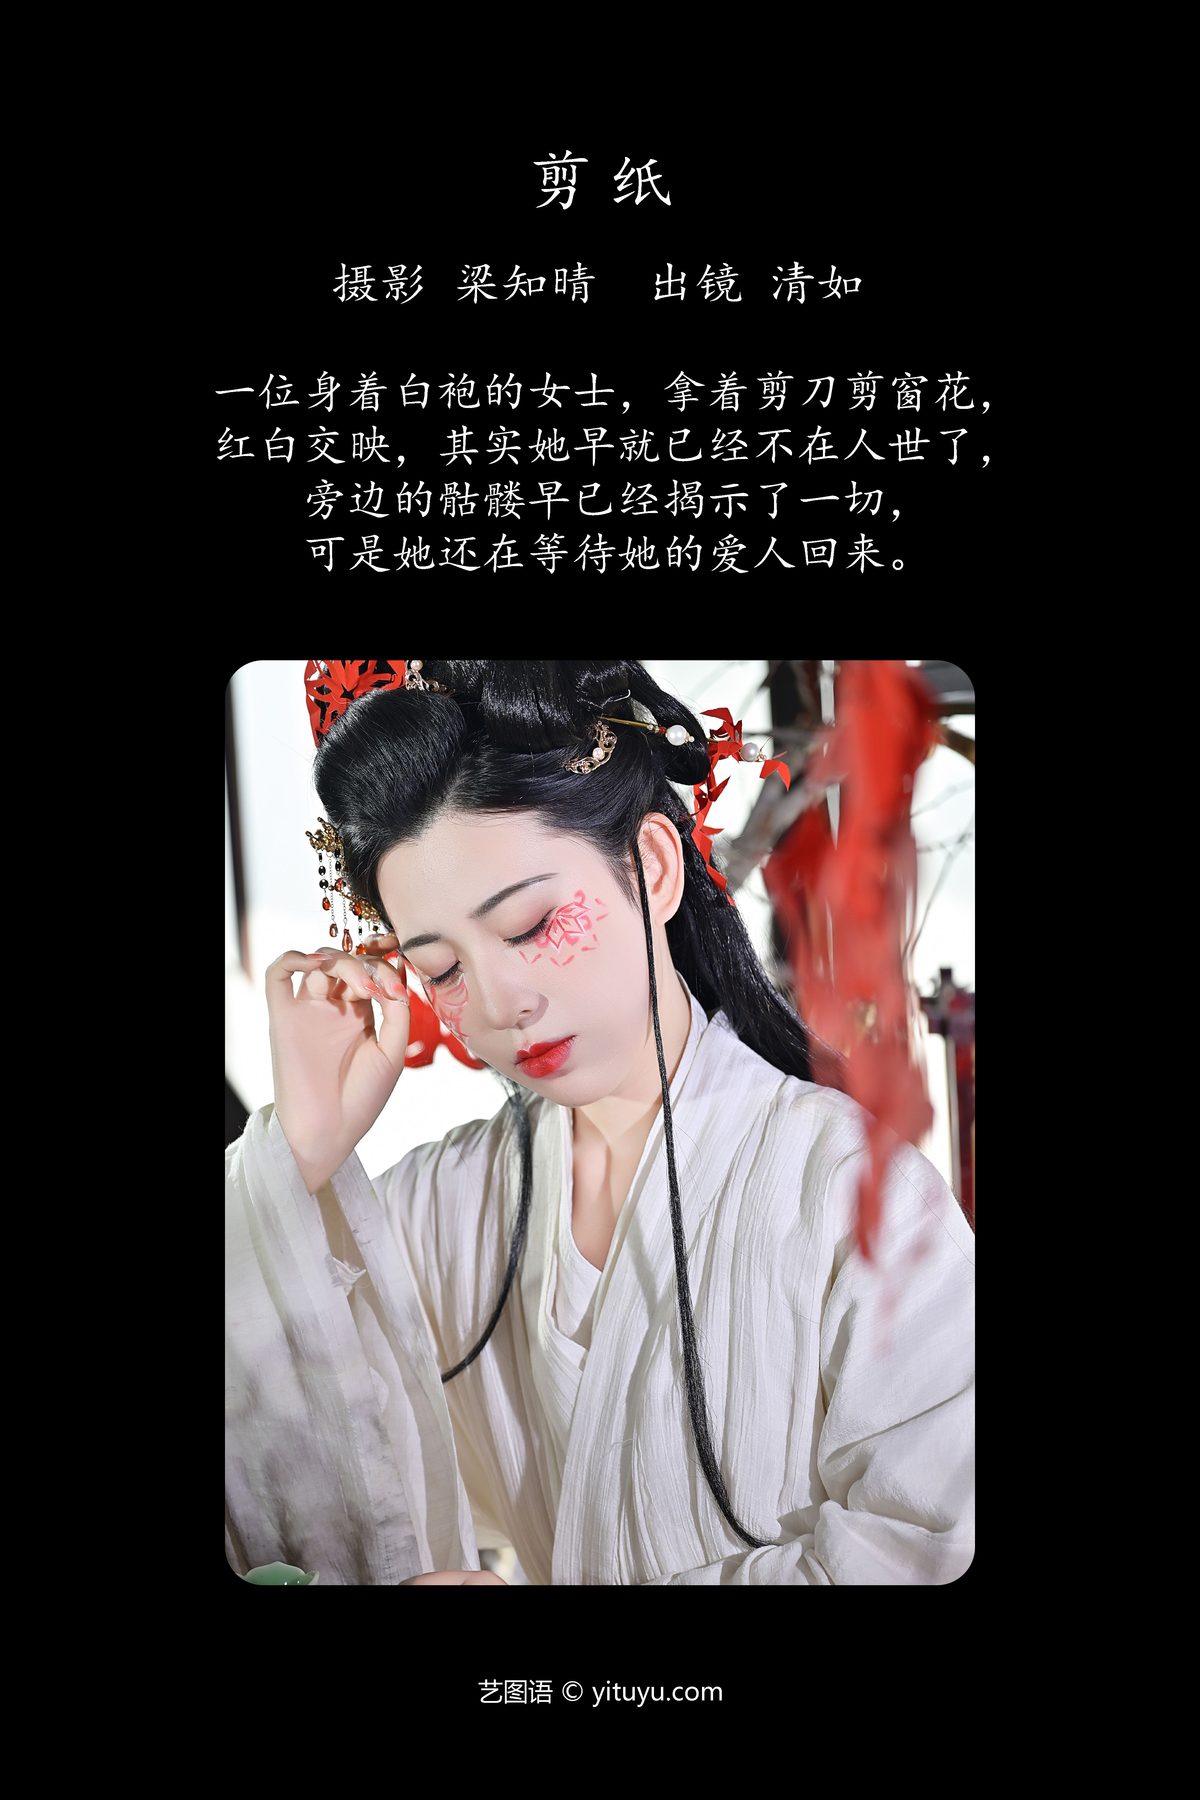 YiTuYu艺图语 Vol 5944 Qing Ru Ginny 0002 1602230624.jpg